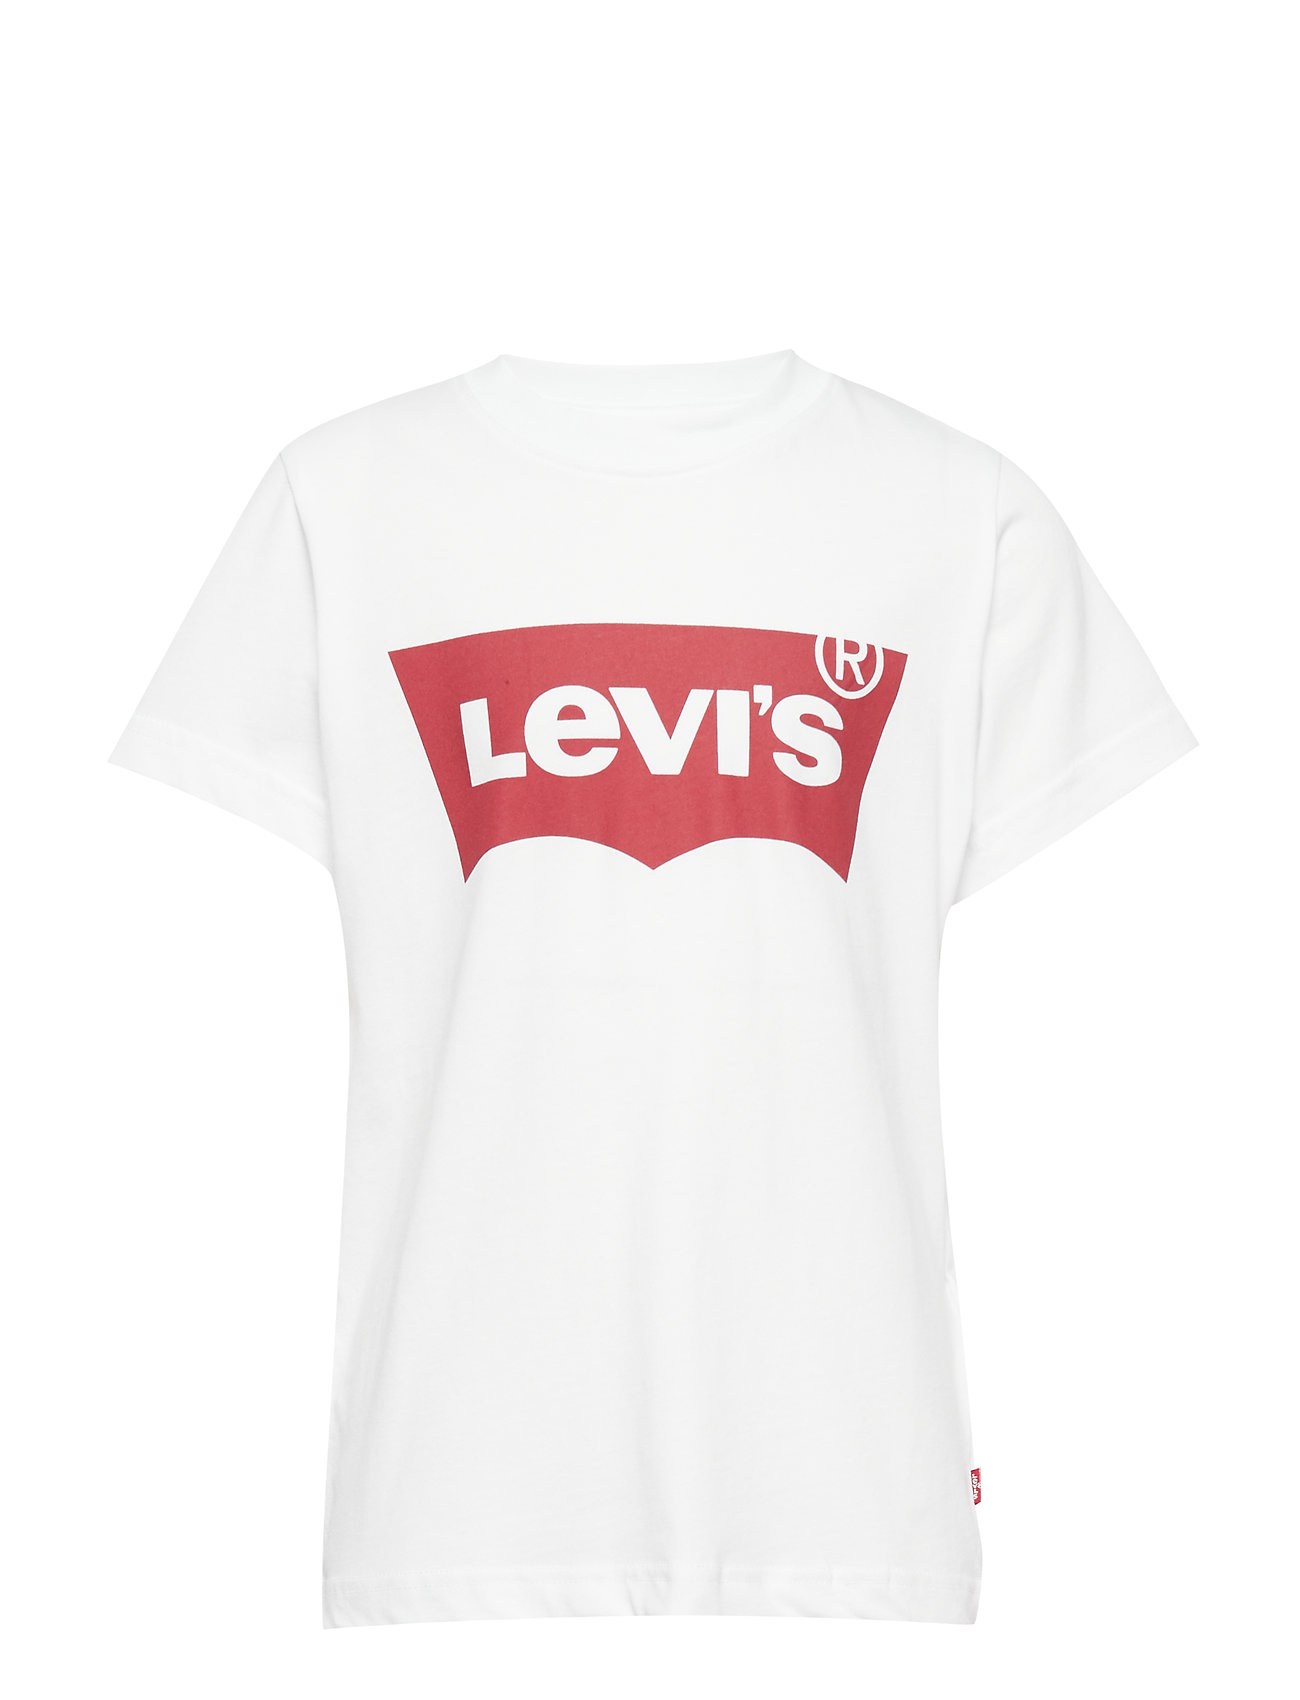 Levi's Tee-shirt (Transparent), (15 